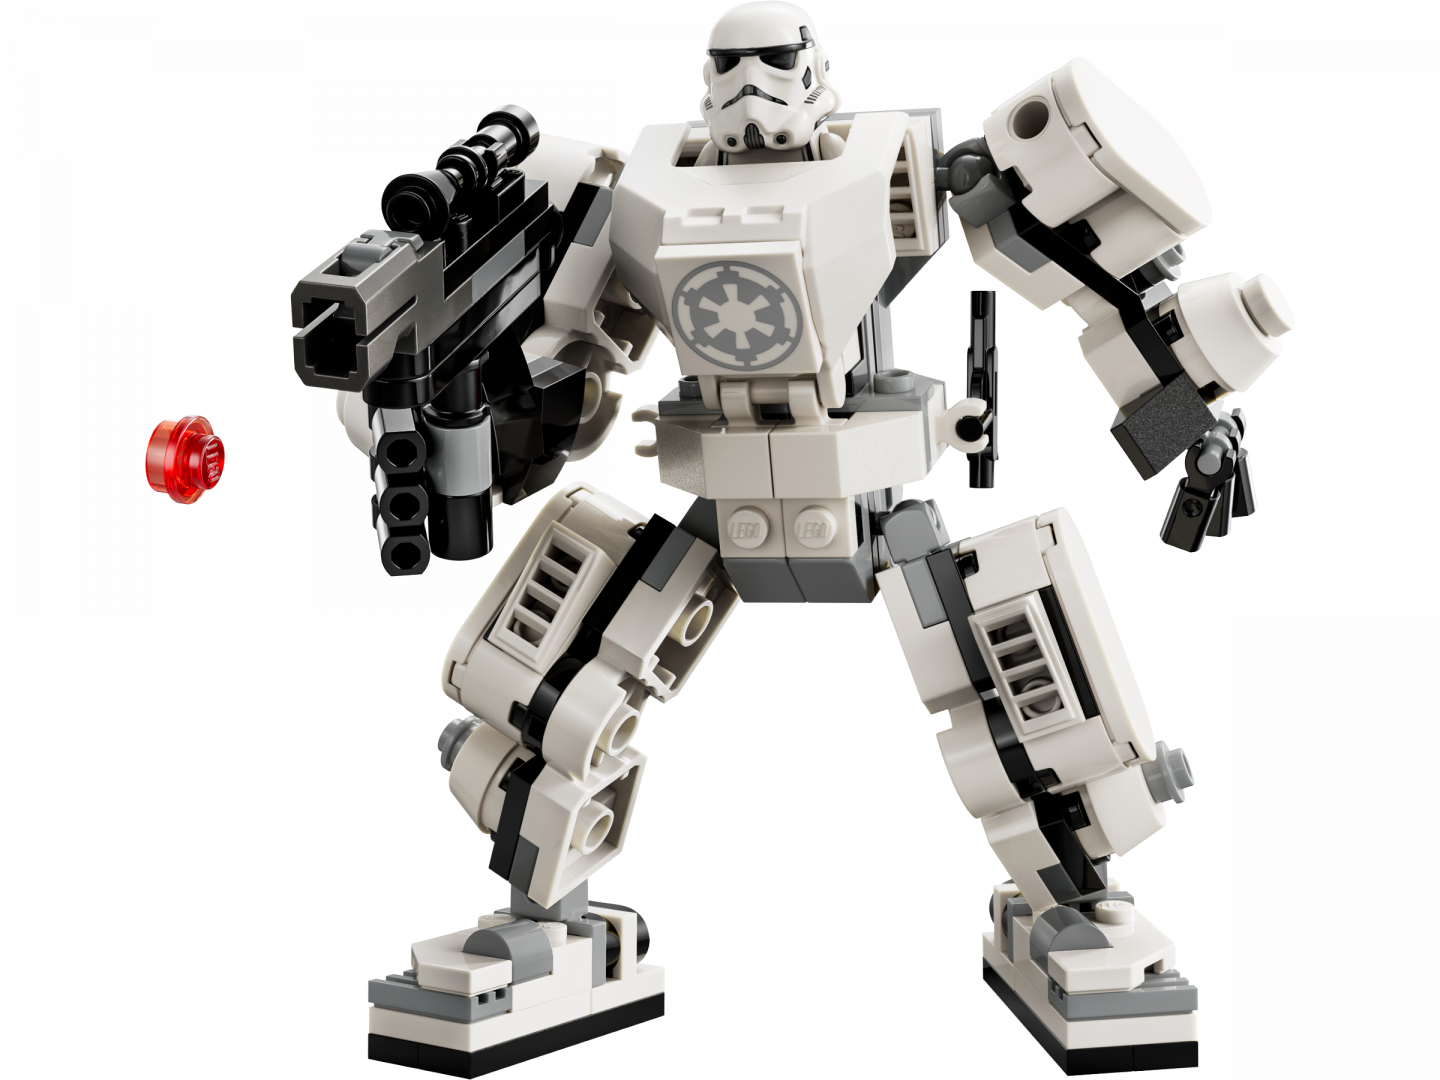 Stormtrooper™ mecha